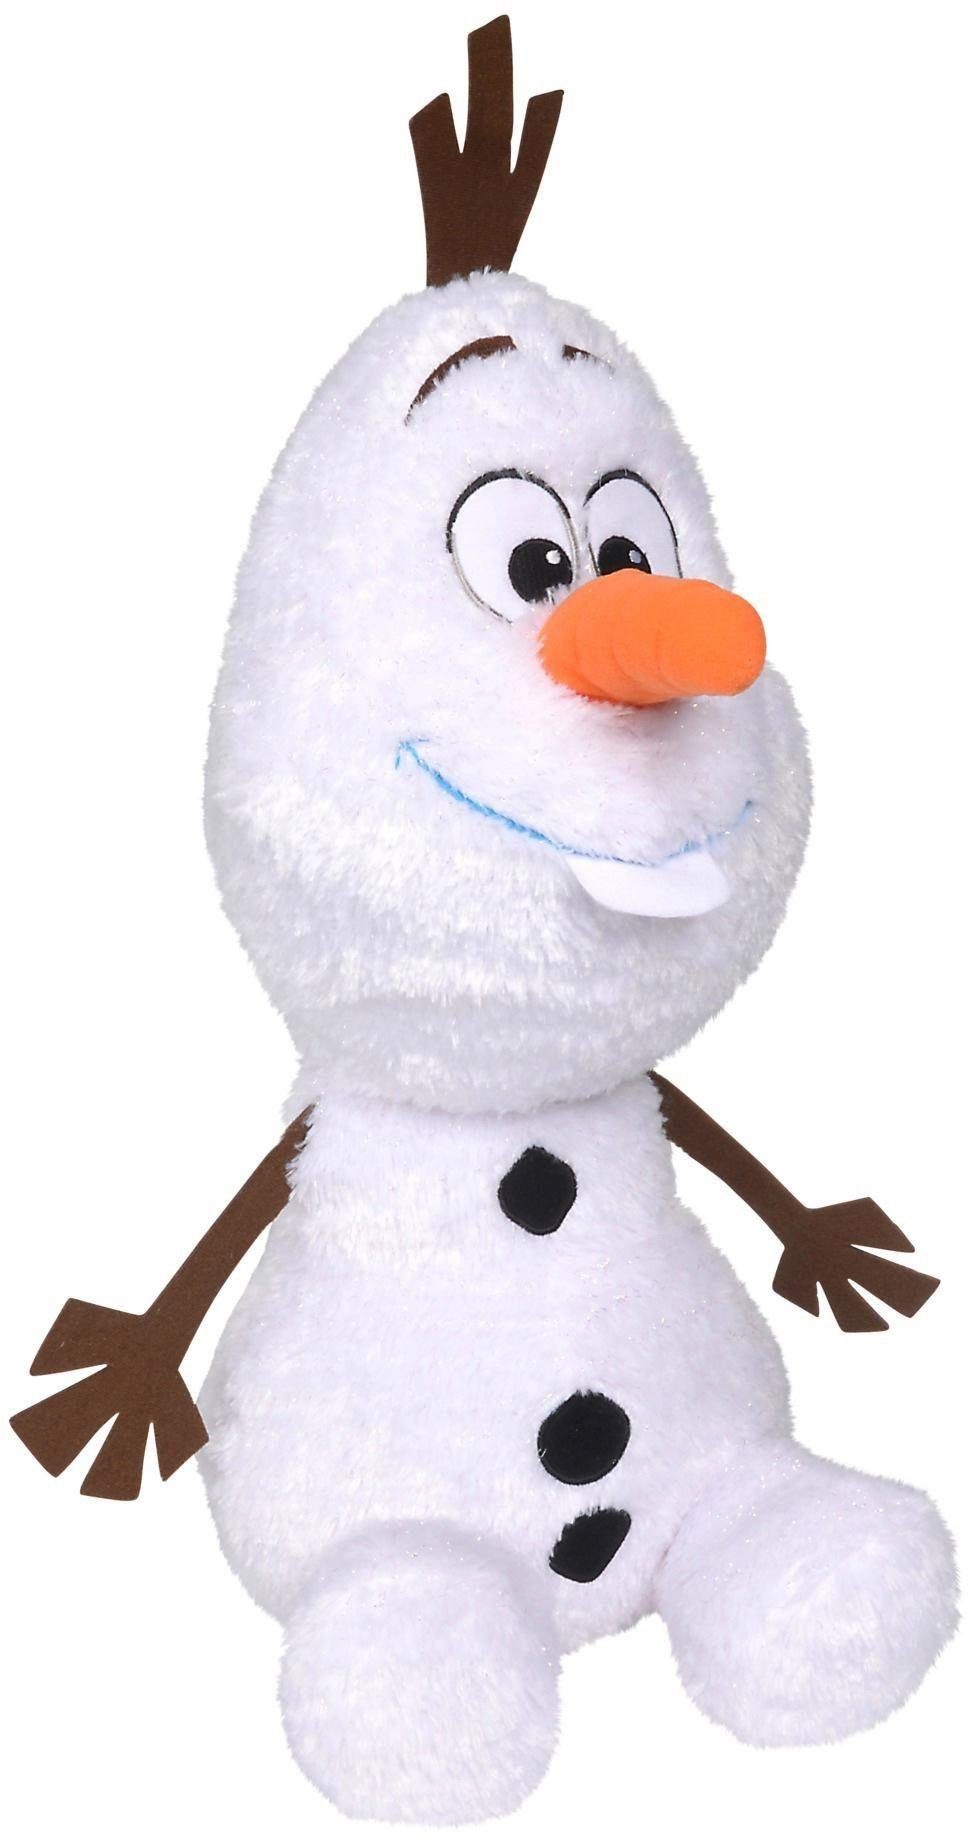 SIMBA Plüschfigur Disney Frozen 2, Olaf, 50 cm